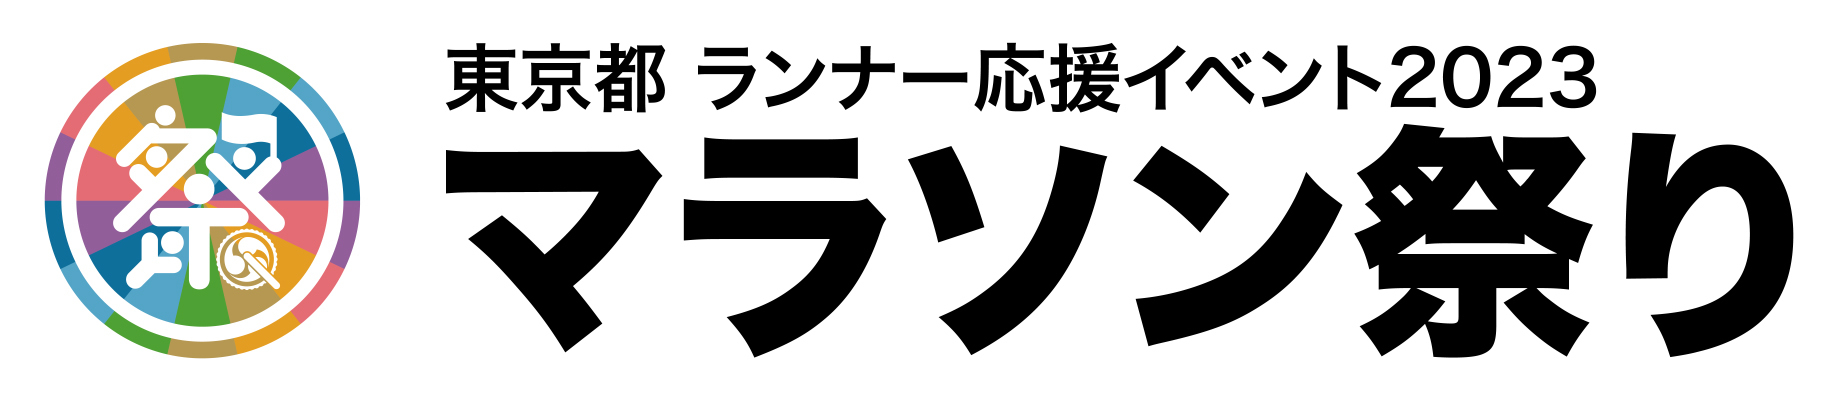 「東京都 ランナー応援イベント 2023 マラソン祭り」
11月14日から12月5日まで、沿道を活気づける出演者を募集！